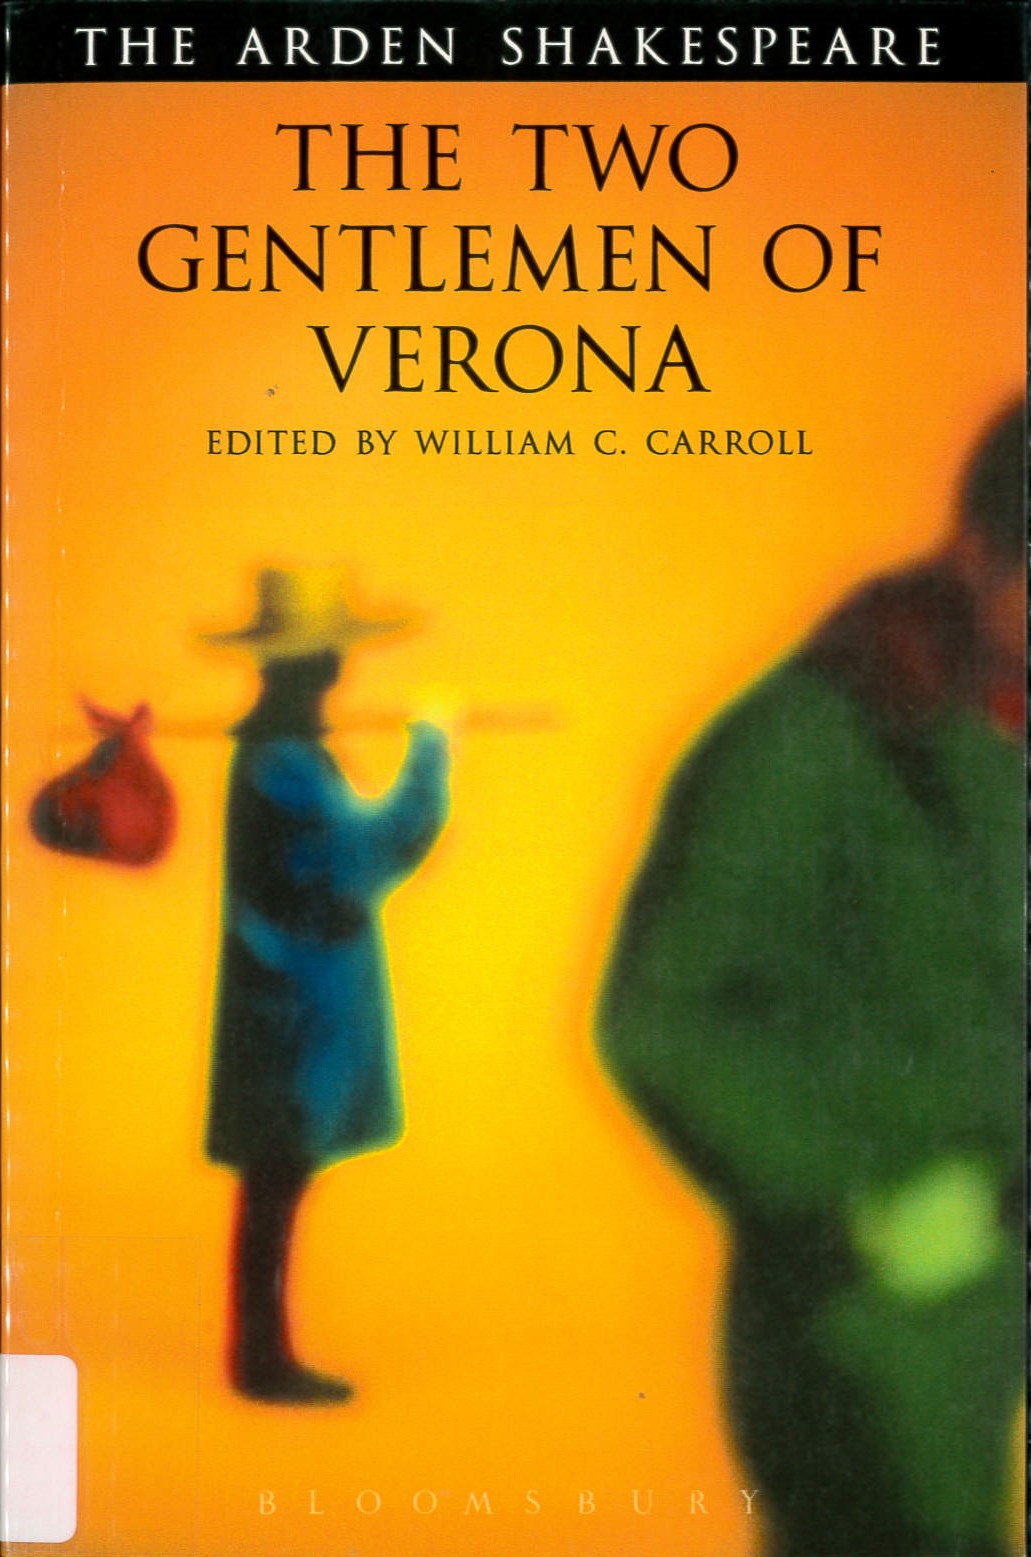 The two gentlemen of Verona /